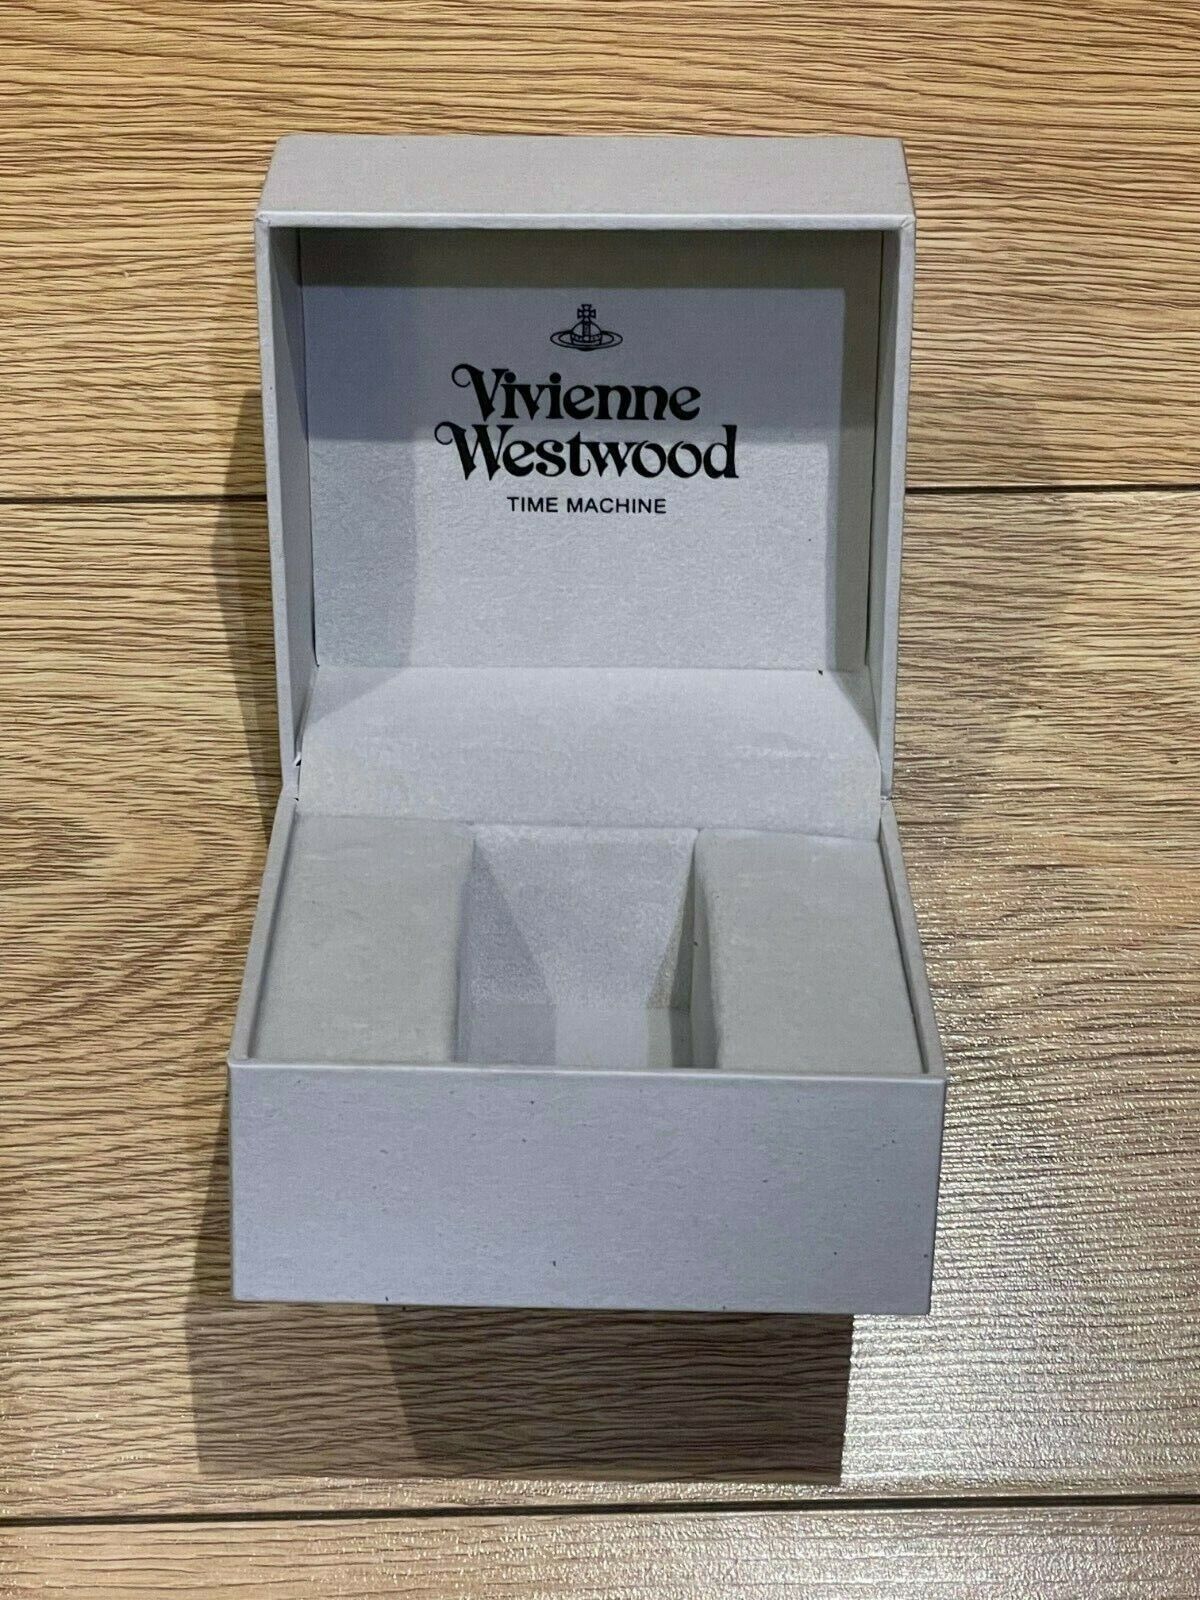 Genuine Original Vivienne Westwood Time Machine Watch Box Case Grey